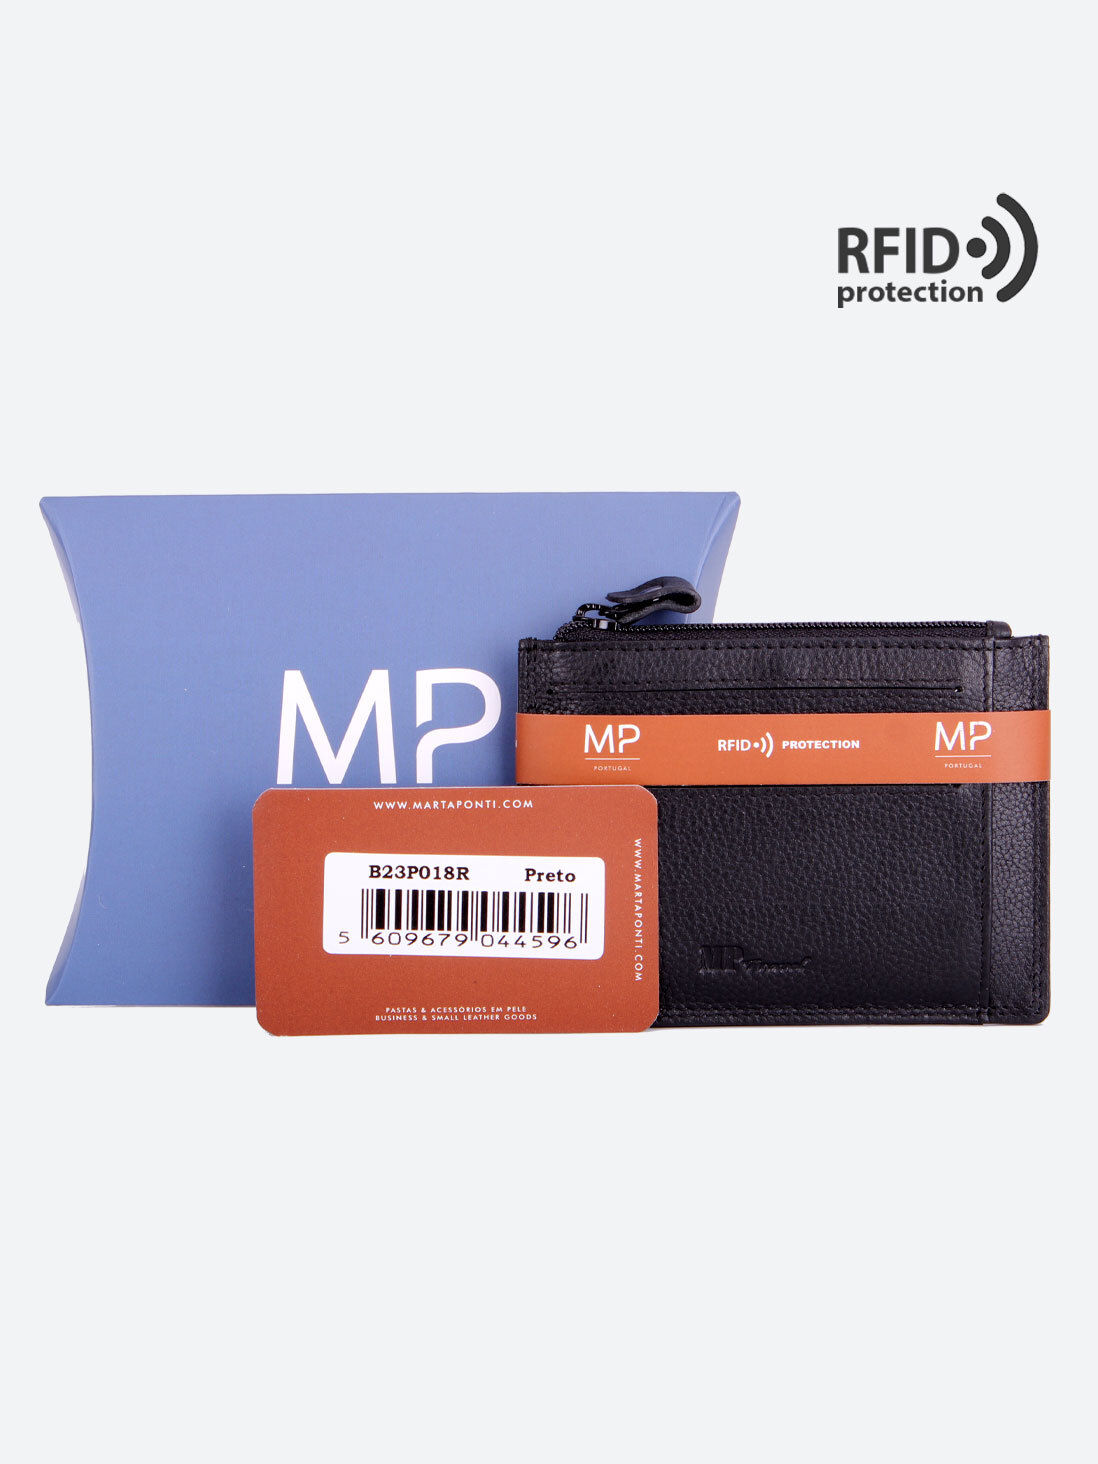 B23P018R Preto - Футляр для карт MP с RFID защитой